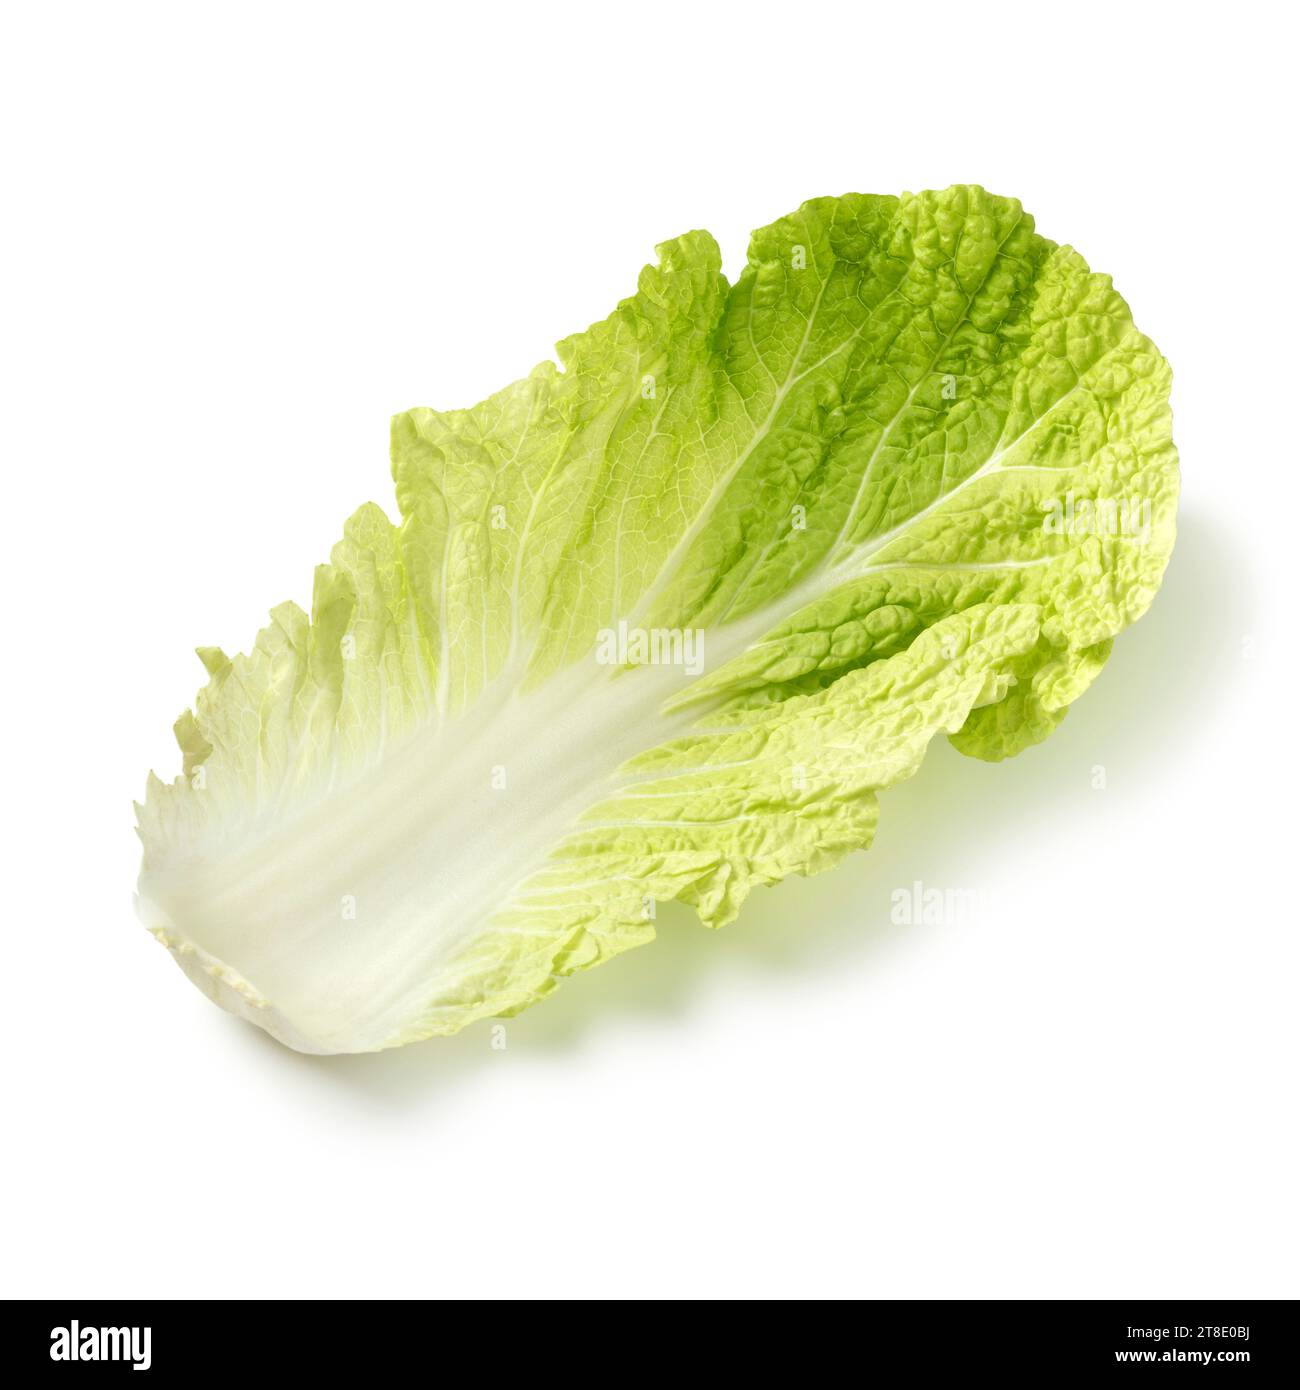 Single fresh raw Chinese cabbage leaf close up isolated on white background Stock Photo